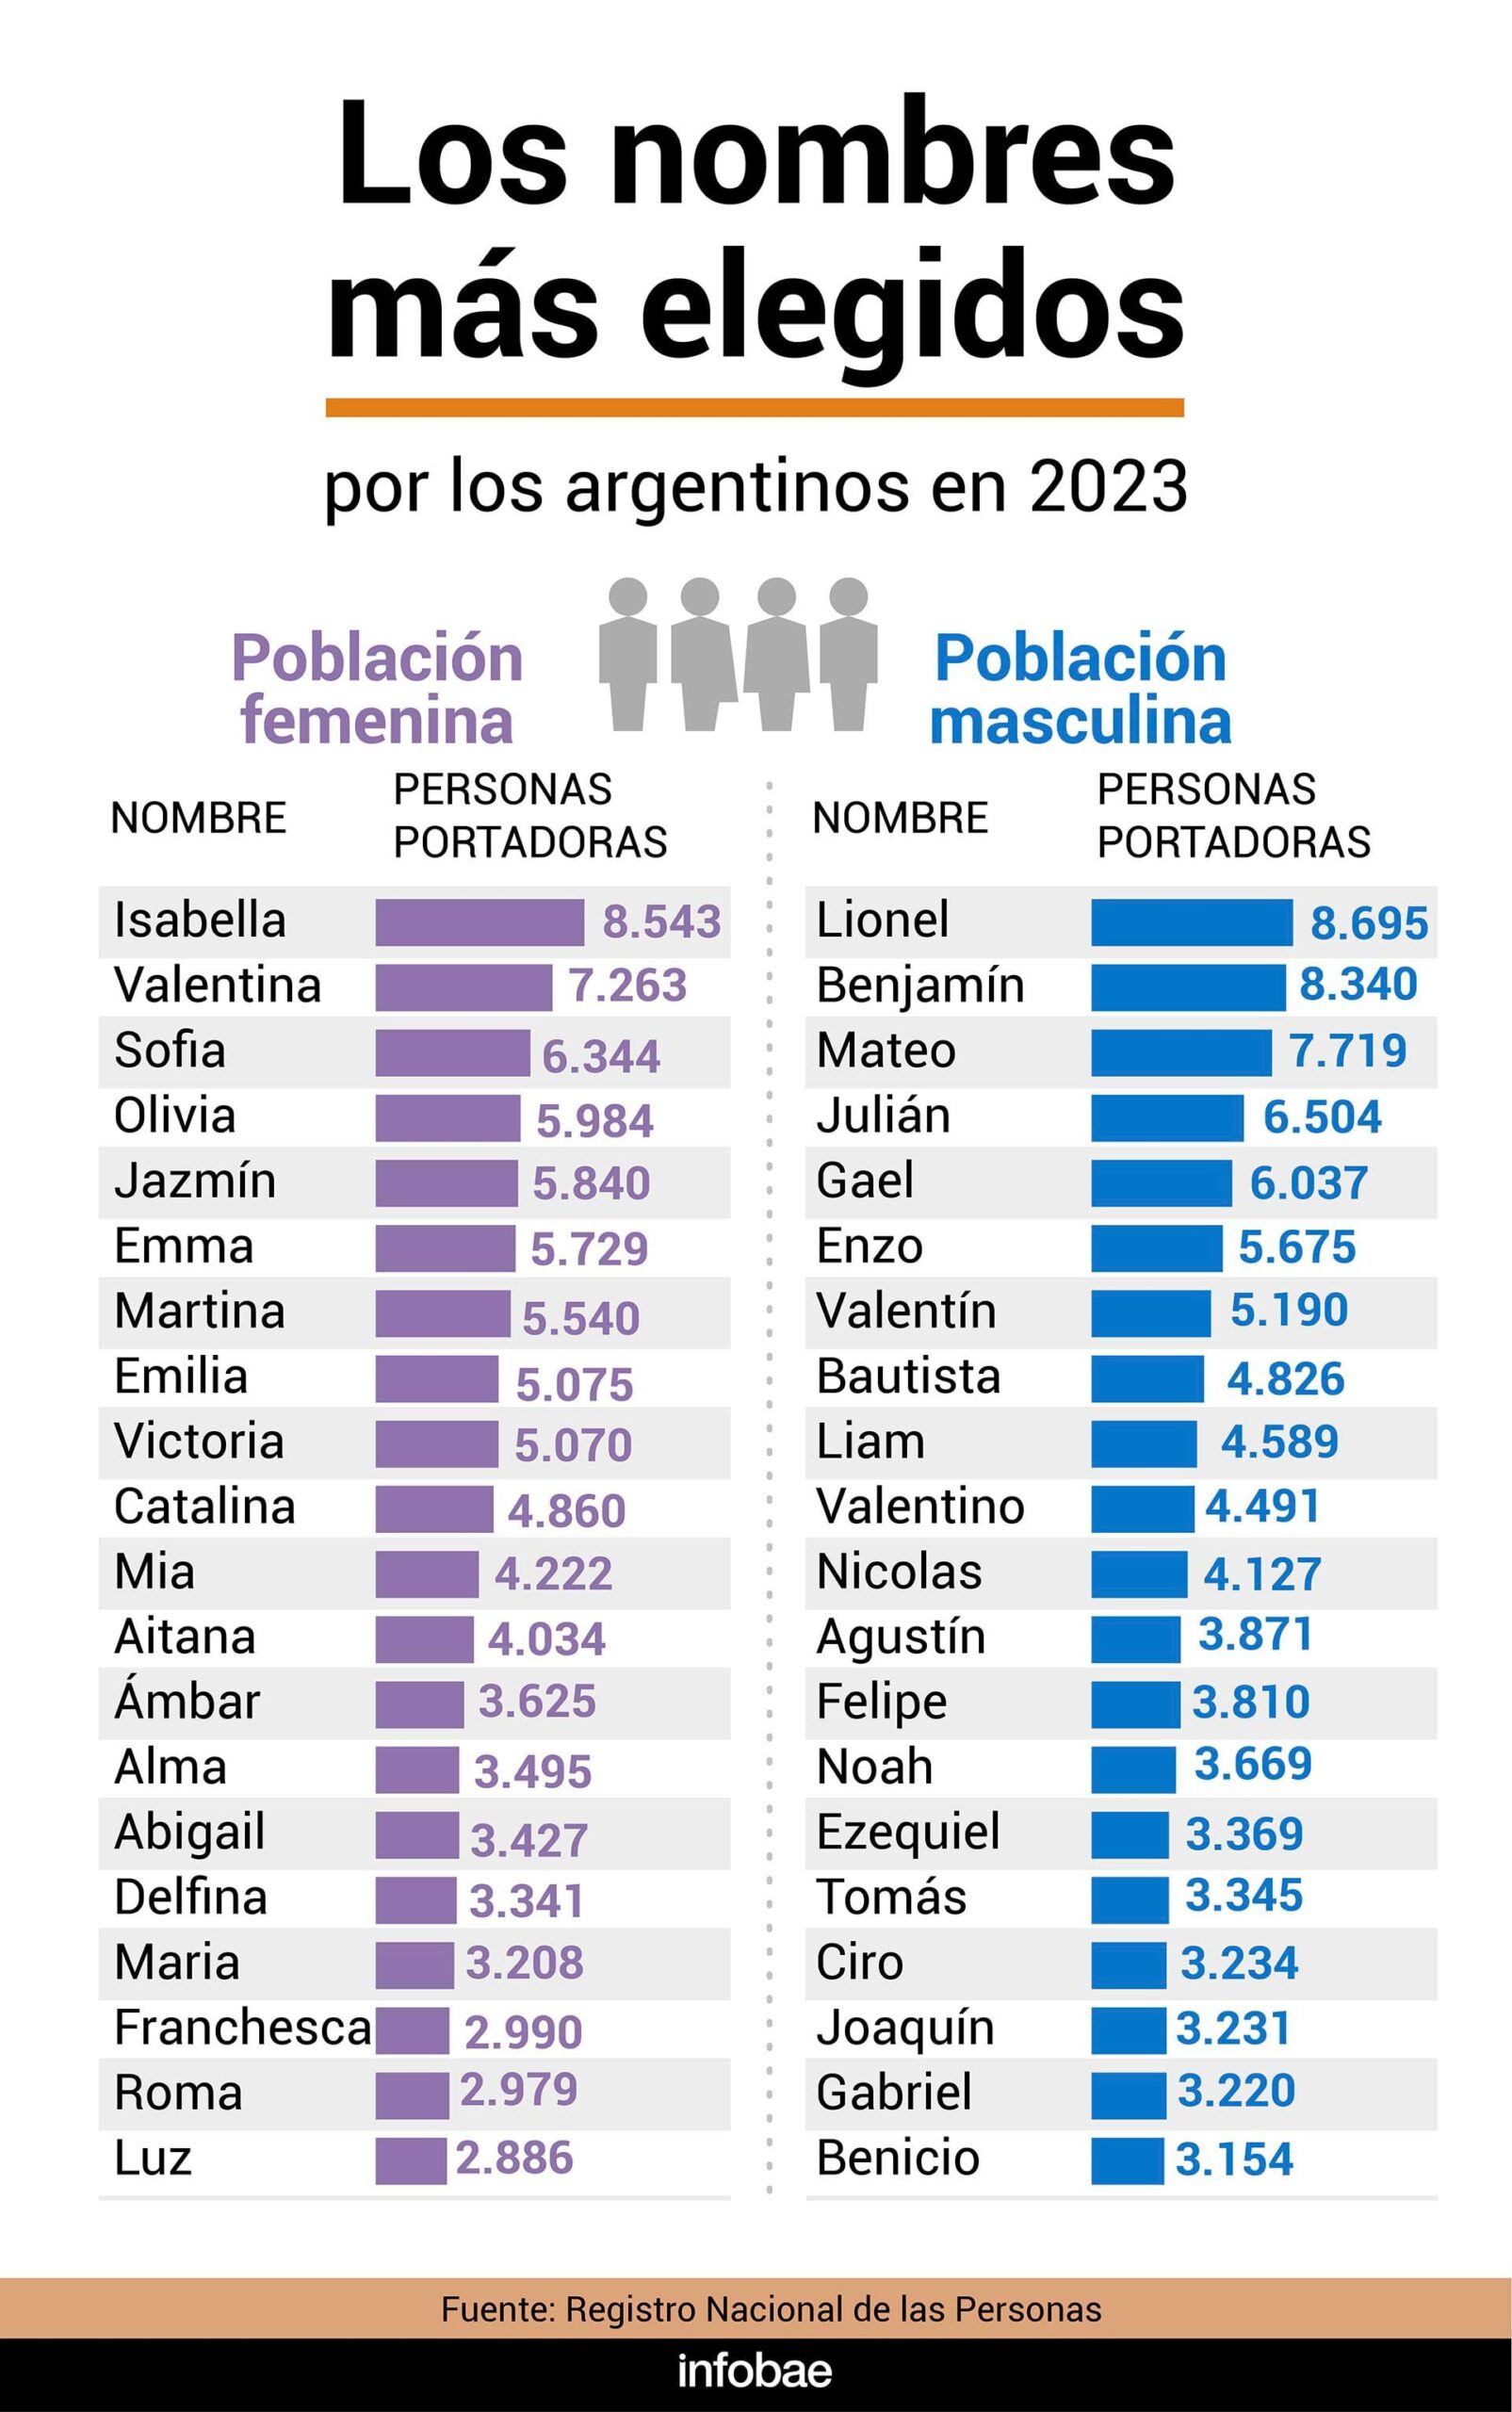 Los nombres más elegidos por los argentinos Infografía